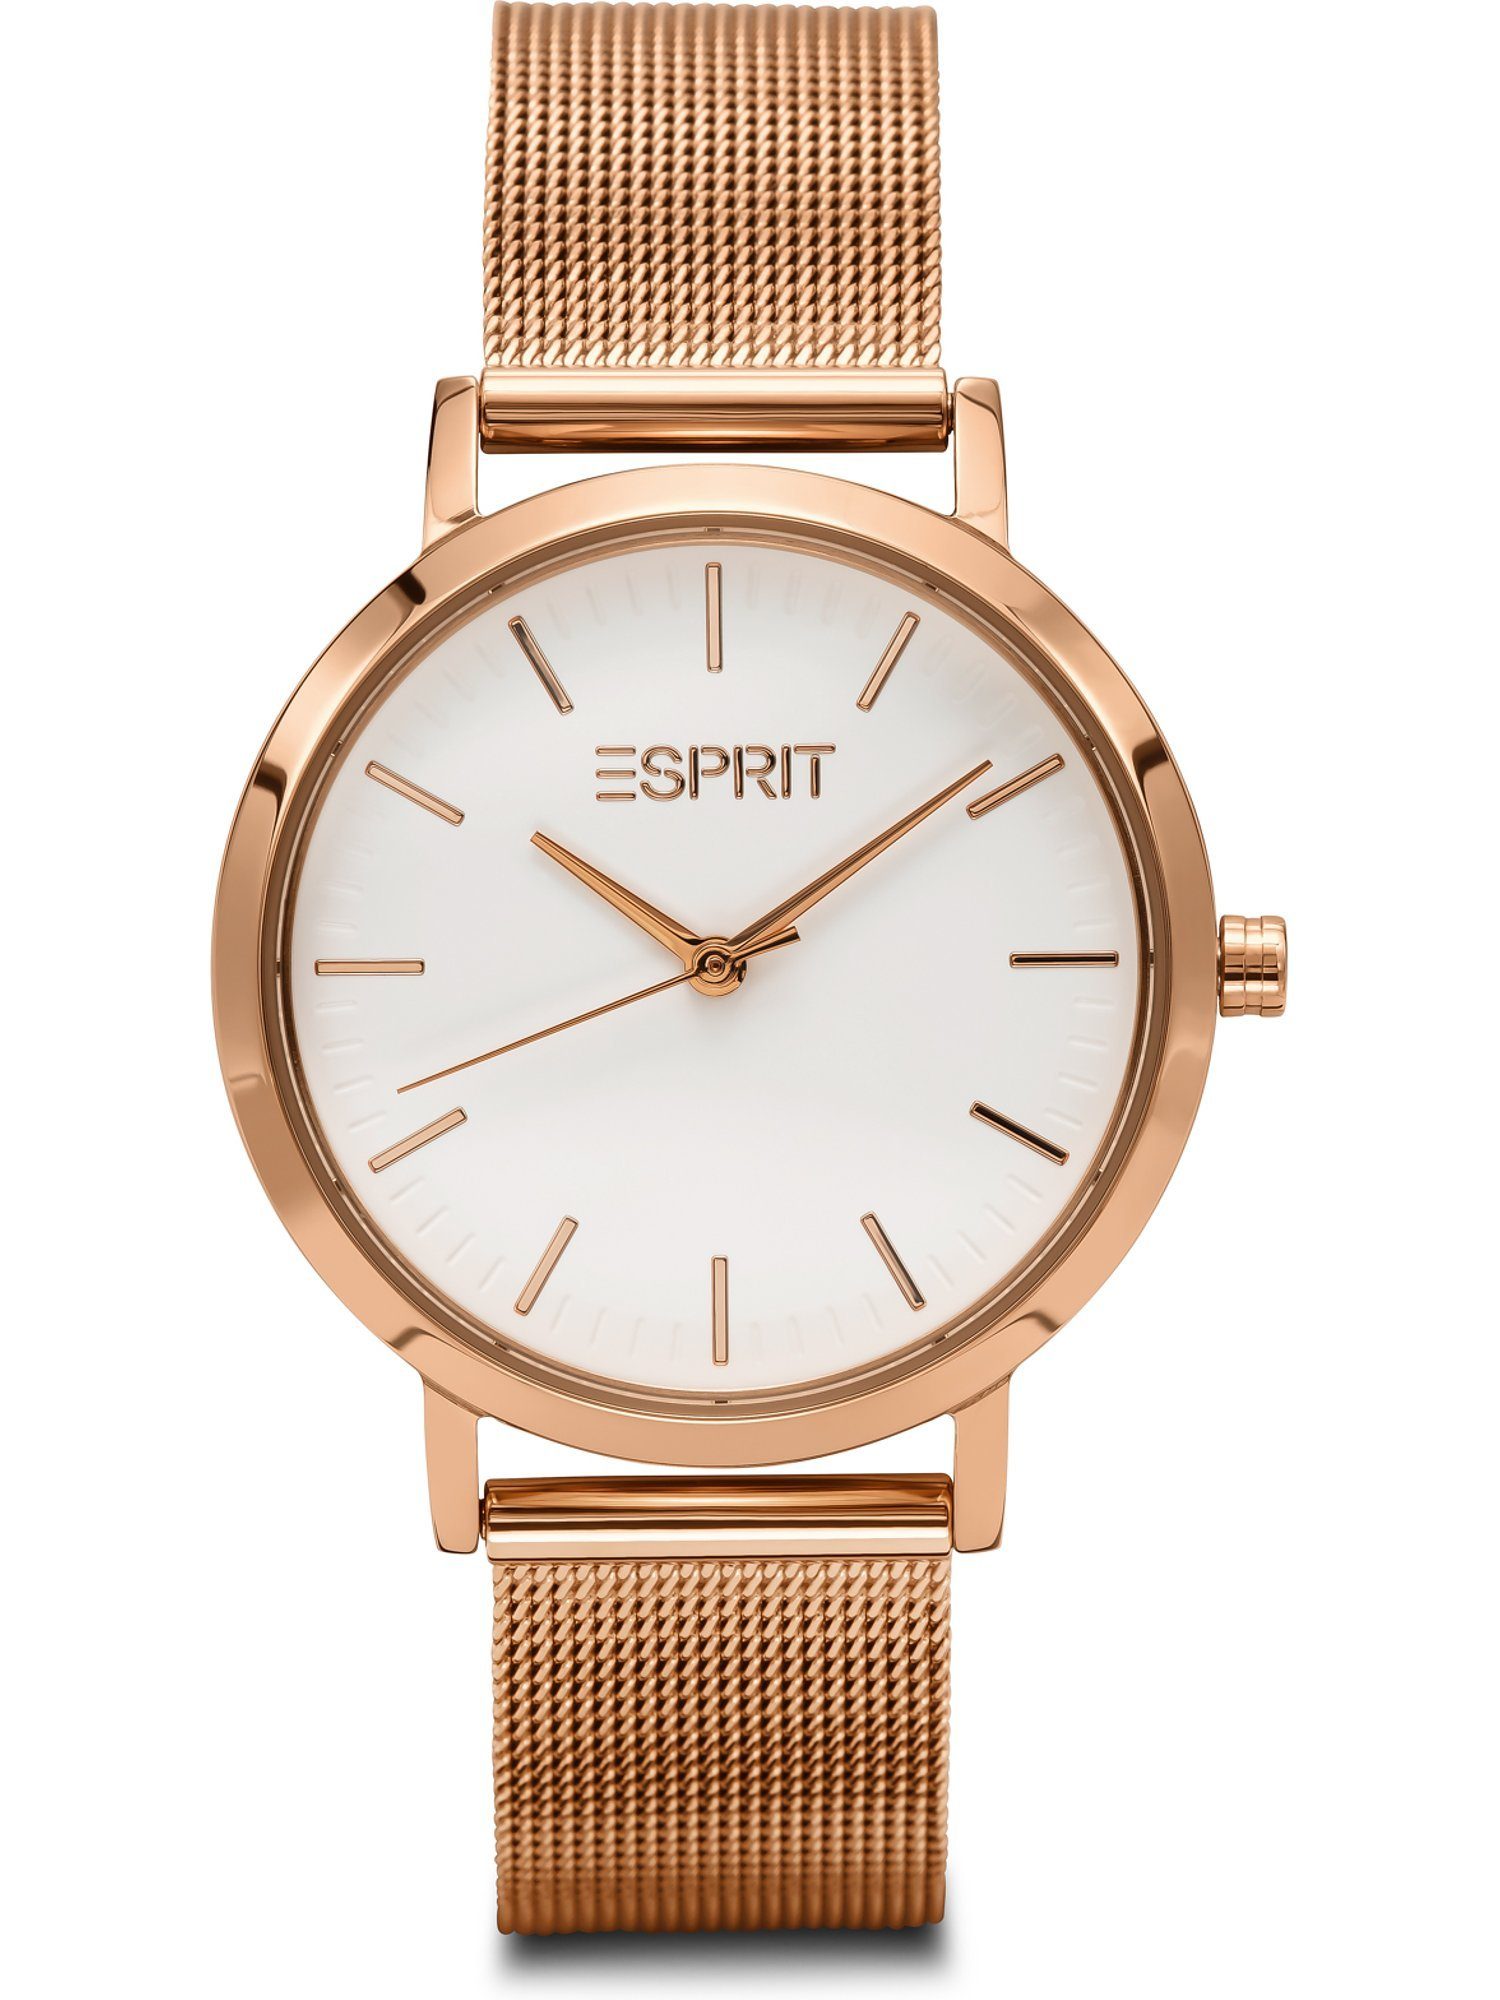 Esprit Quarzuhr ESPRIT Damen-Uhren Analog Quarz, Klassikuhr roségold